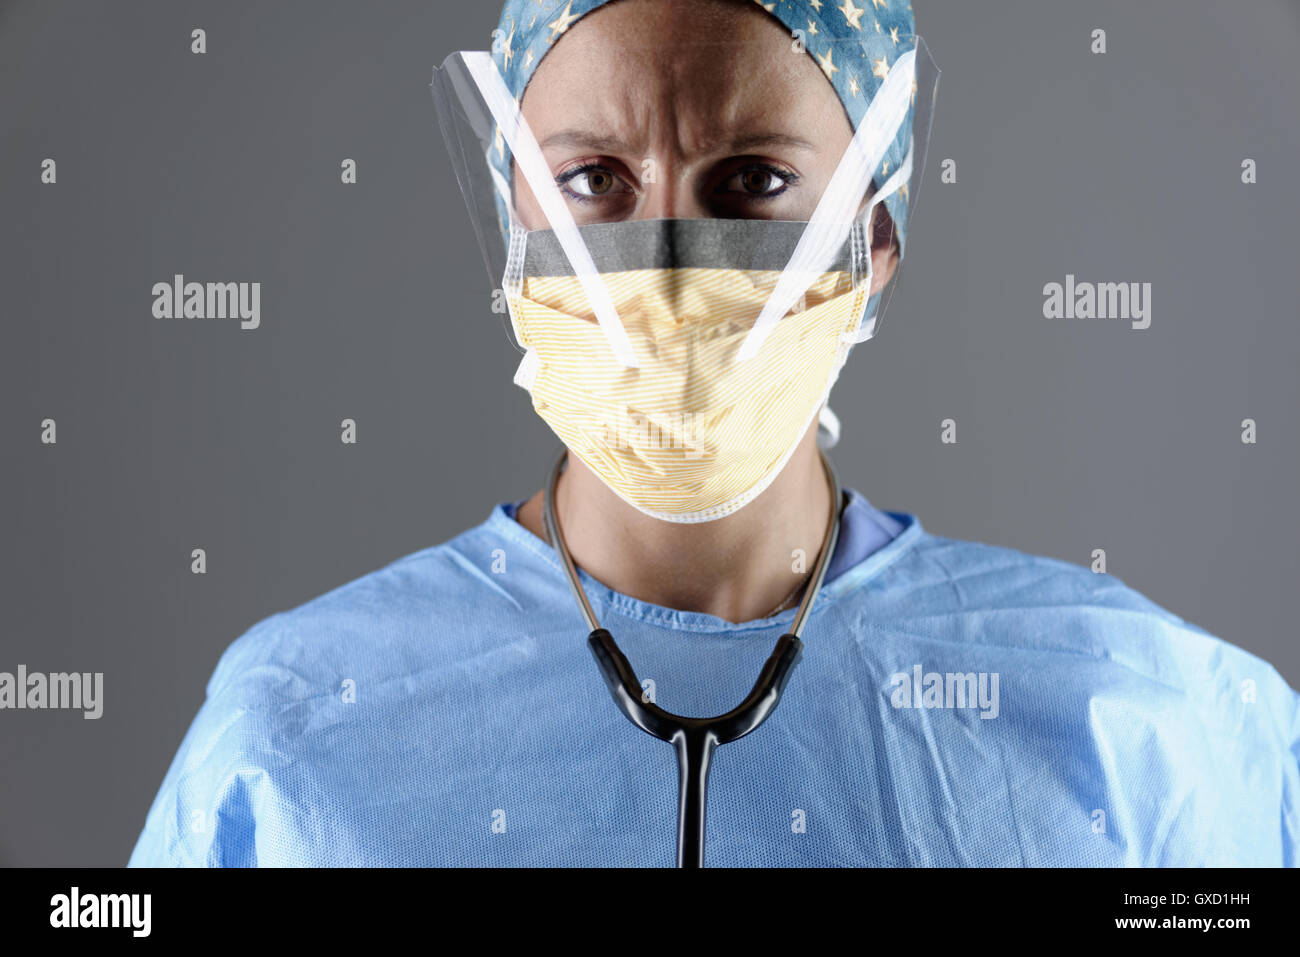 Le port de protection oculaire chirurgicale chirurgien et masque de visage looking at camera Banque D'Images